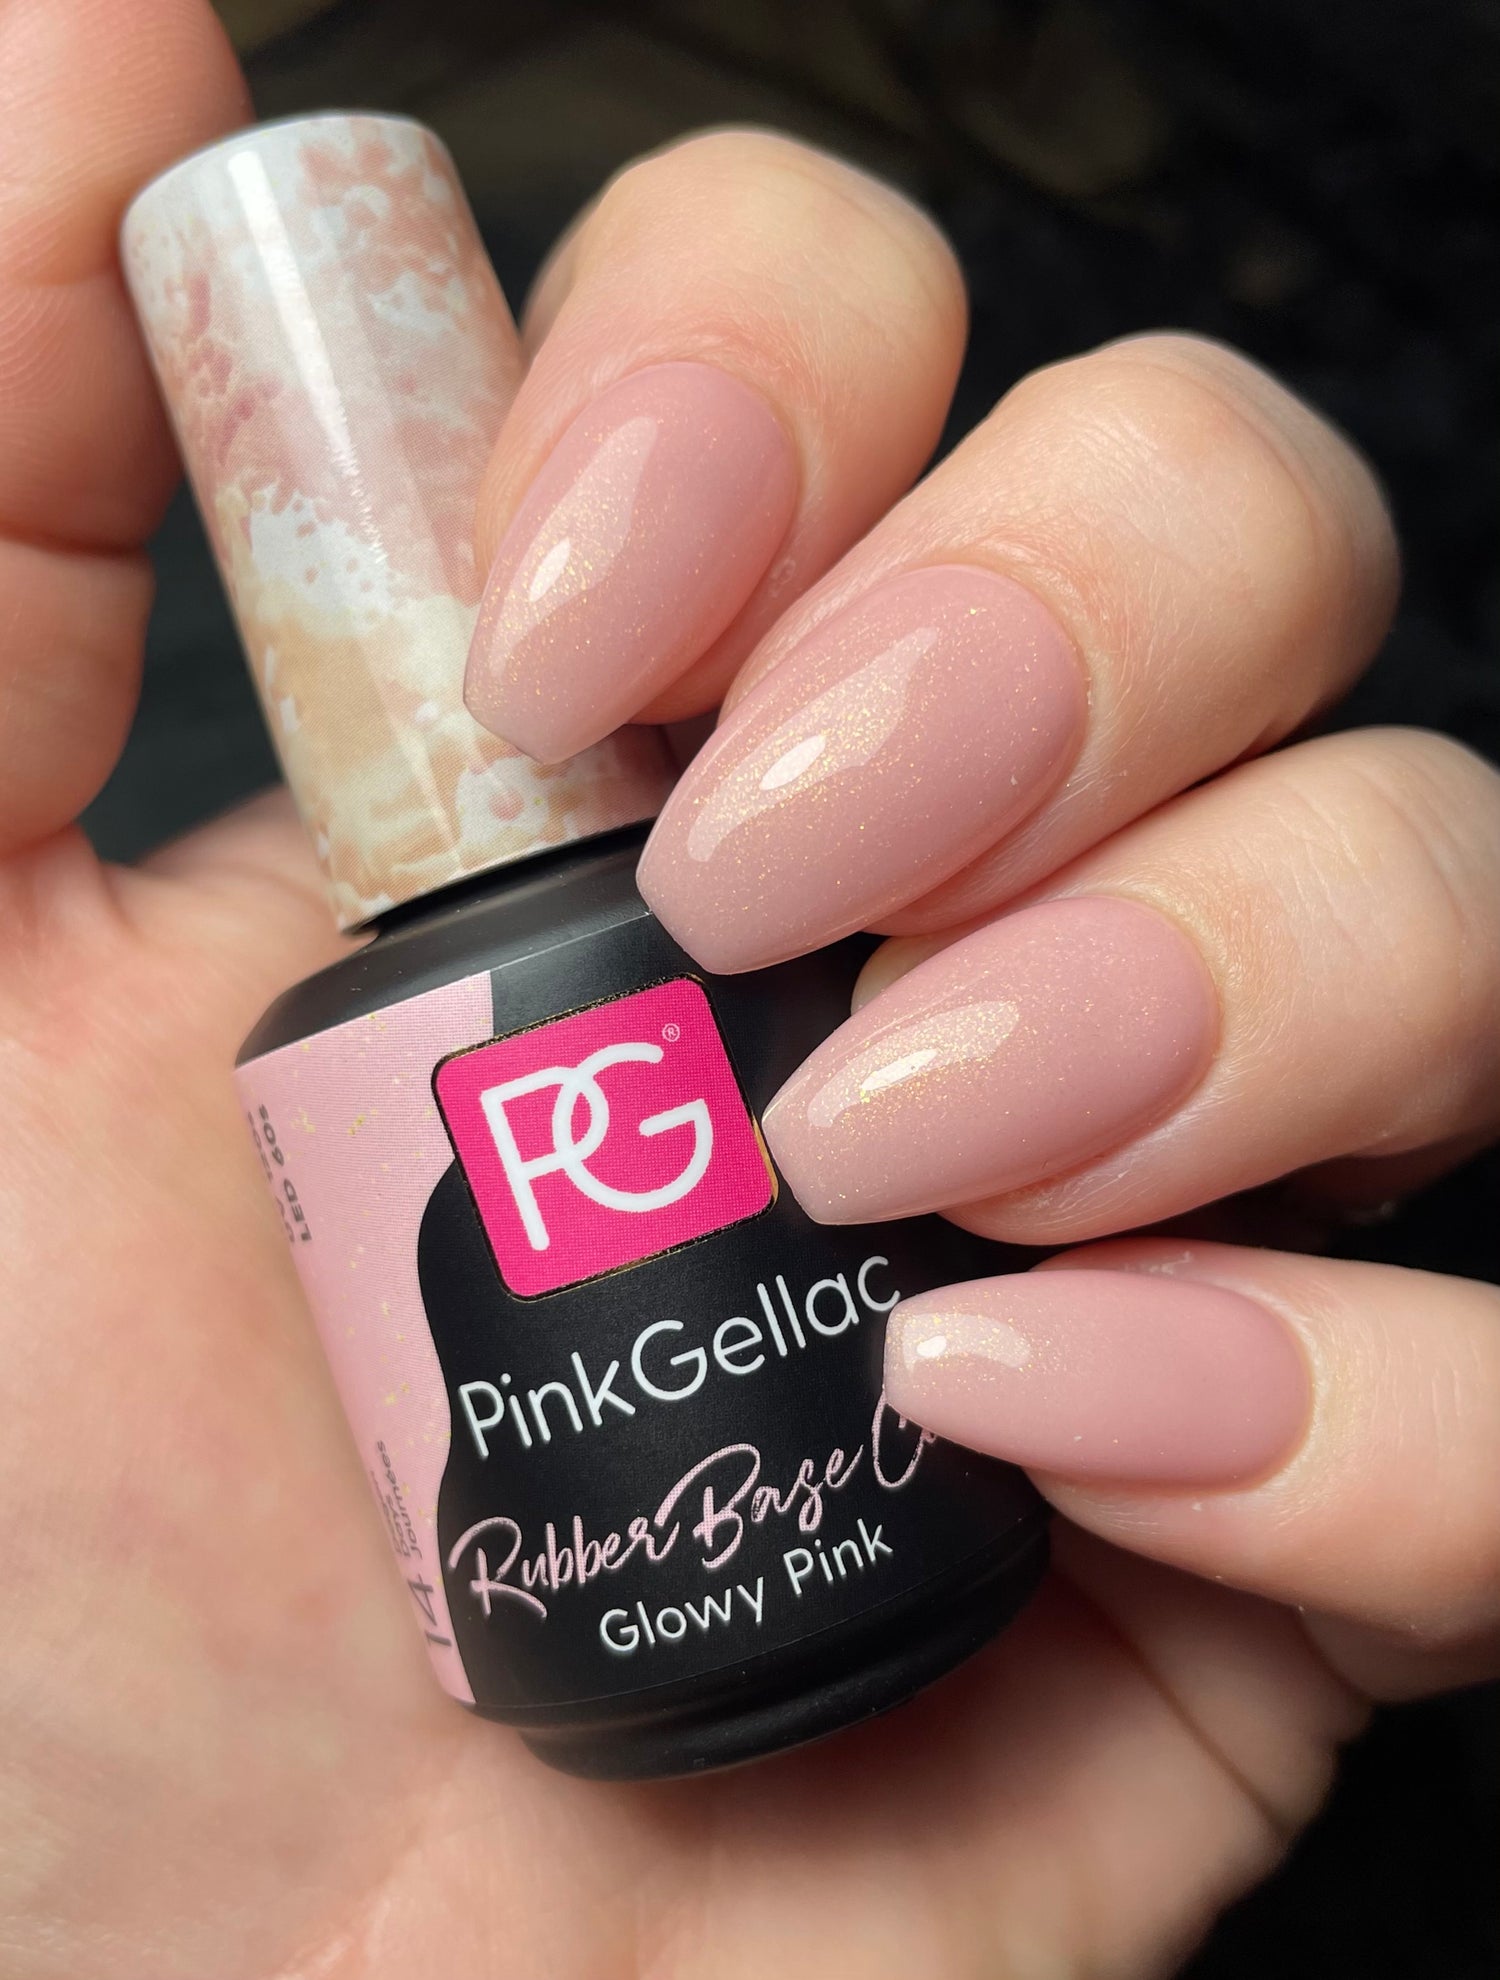 #RBC Glowy Pink